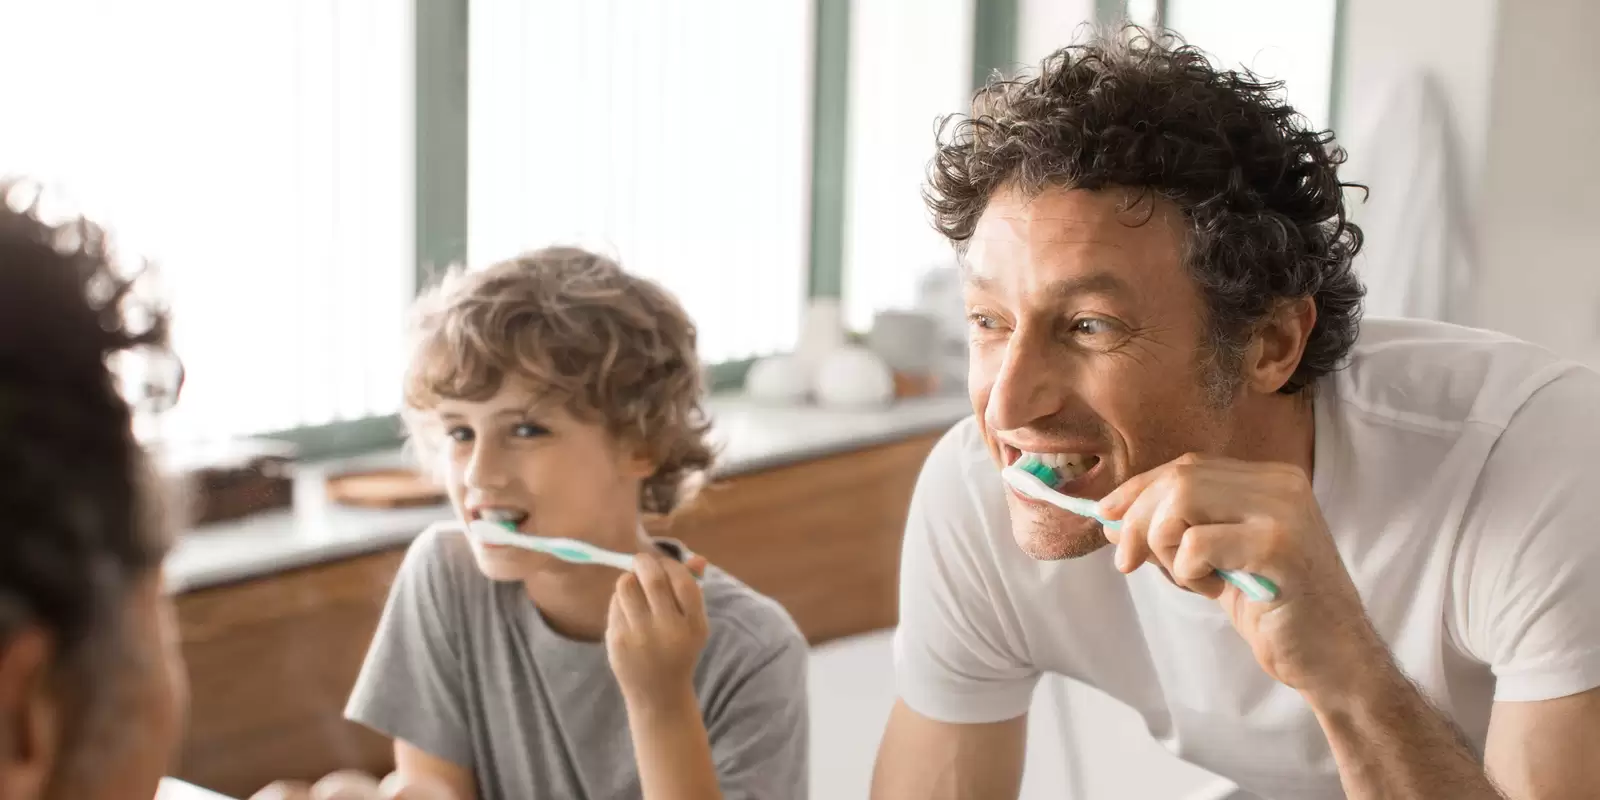 Kind putzt Zähne vor dem Spiegel